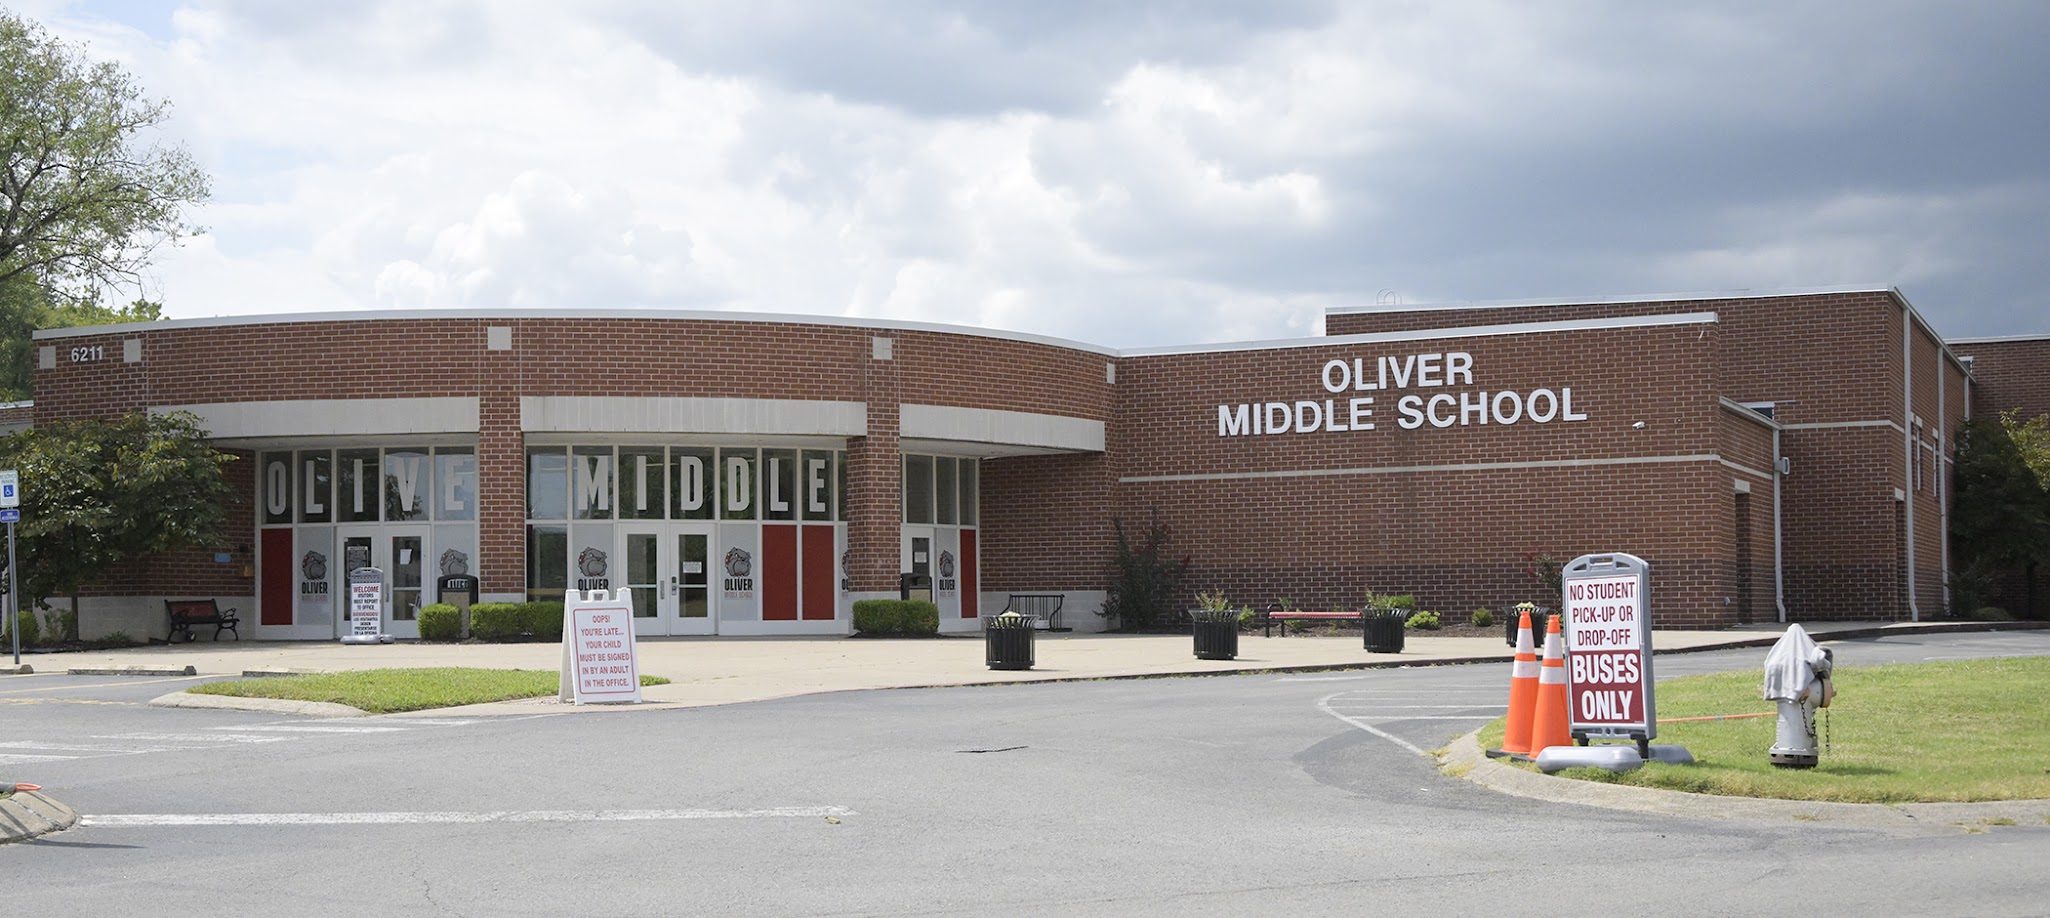 Henry Oliver Middle School